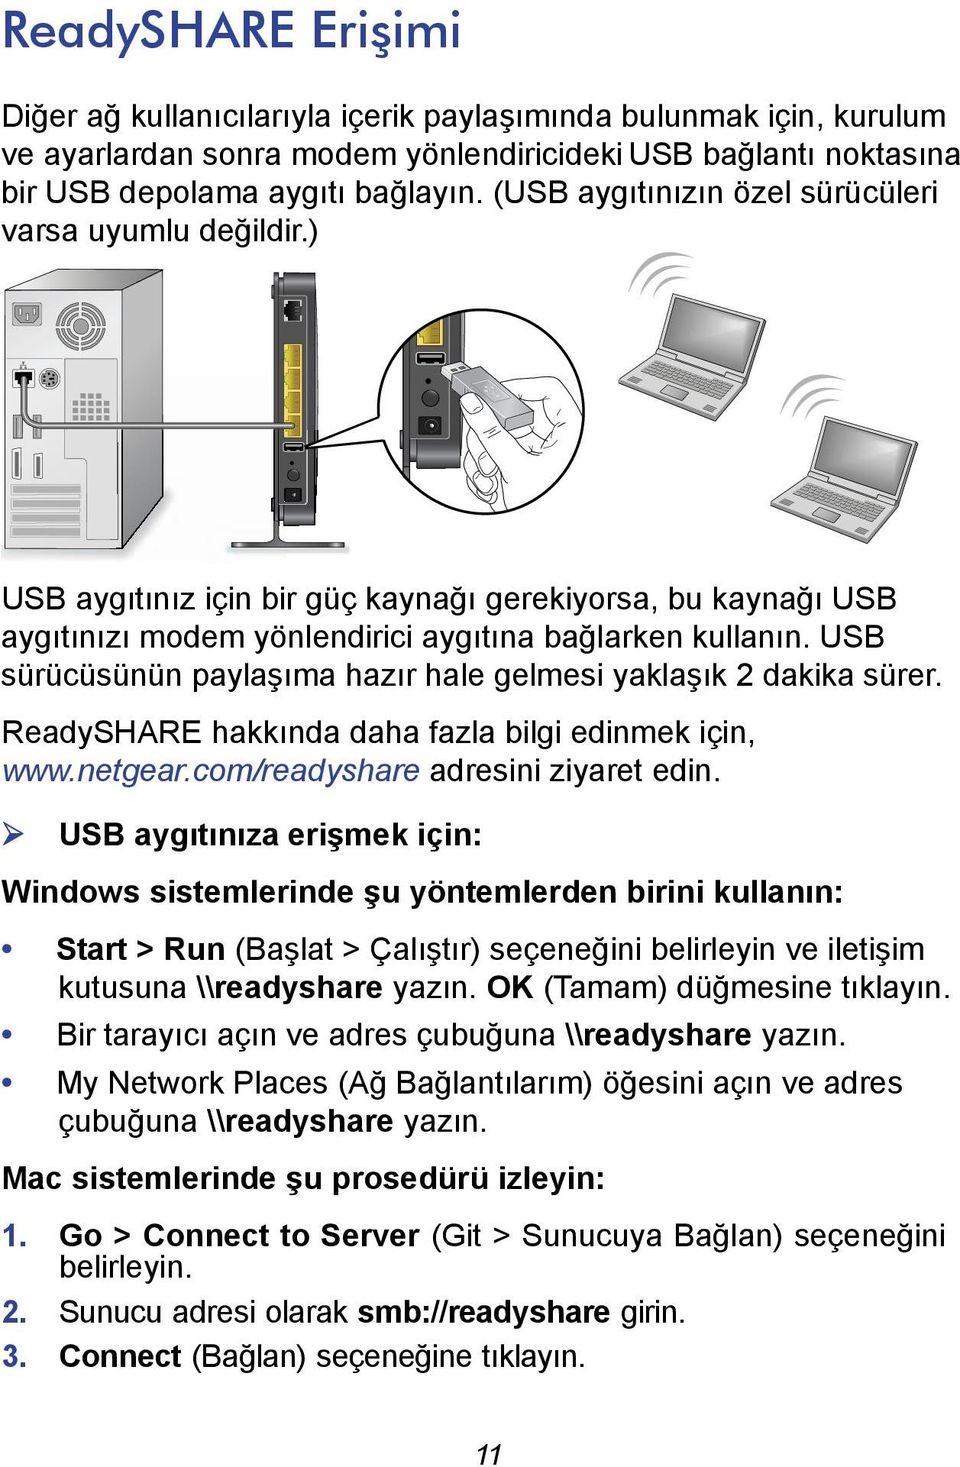 USB sürücüsünün paylaşıma hazır hale gelmesi yaklaşık 2 dakika sürer. ReadySHARE hakkında daha fazla bilgi edinmek için, www.netgear.com/readyshare adresini ziyaret edin.